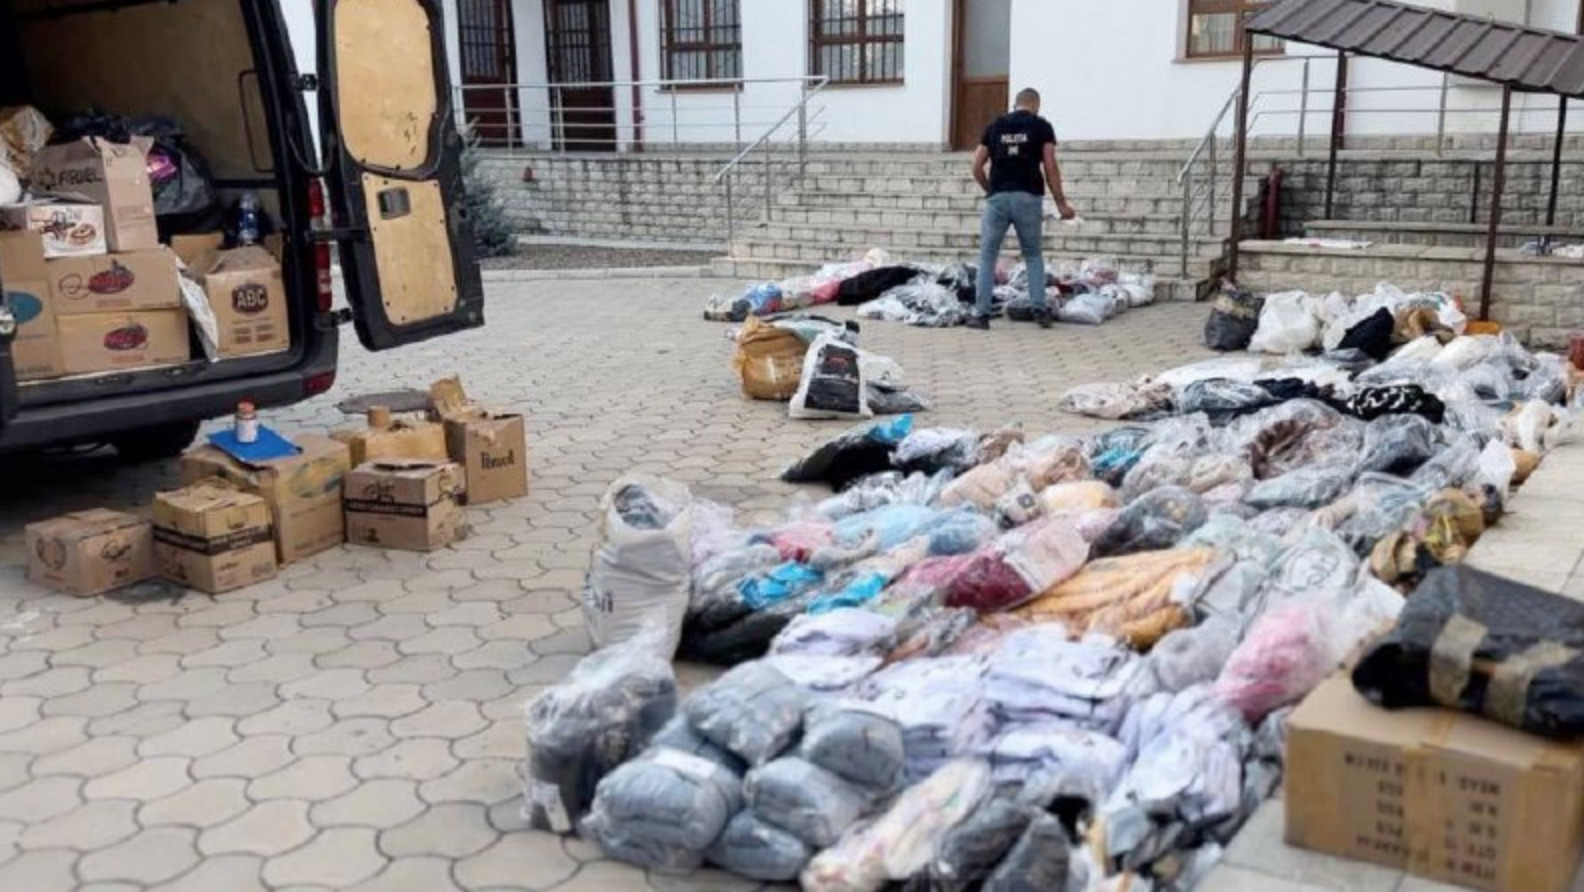 VIDEO Oamenii legii au destructurat o grupare care aducea ilegal în Moldova mărfuri de lux din Turcia. Articole de 500 mii de lei - confiscate